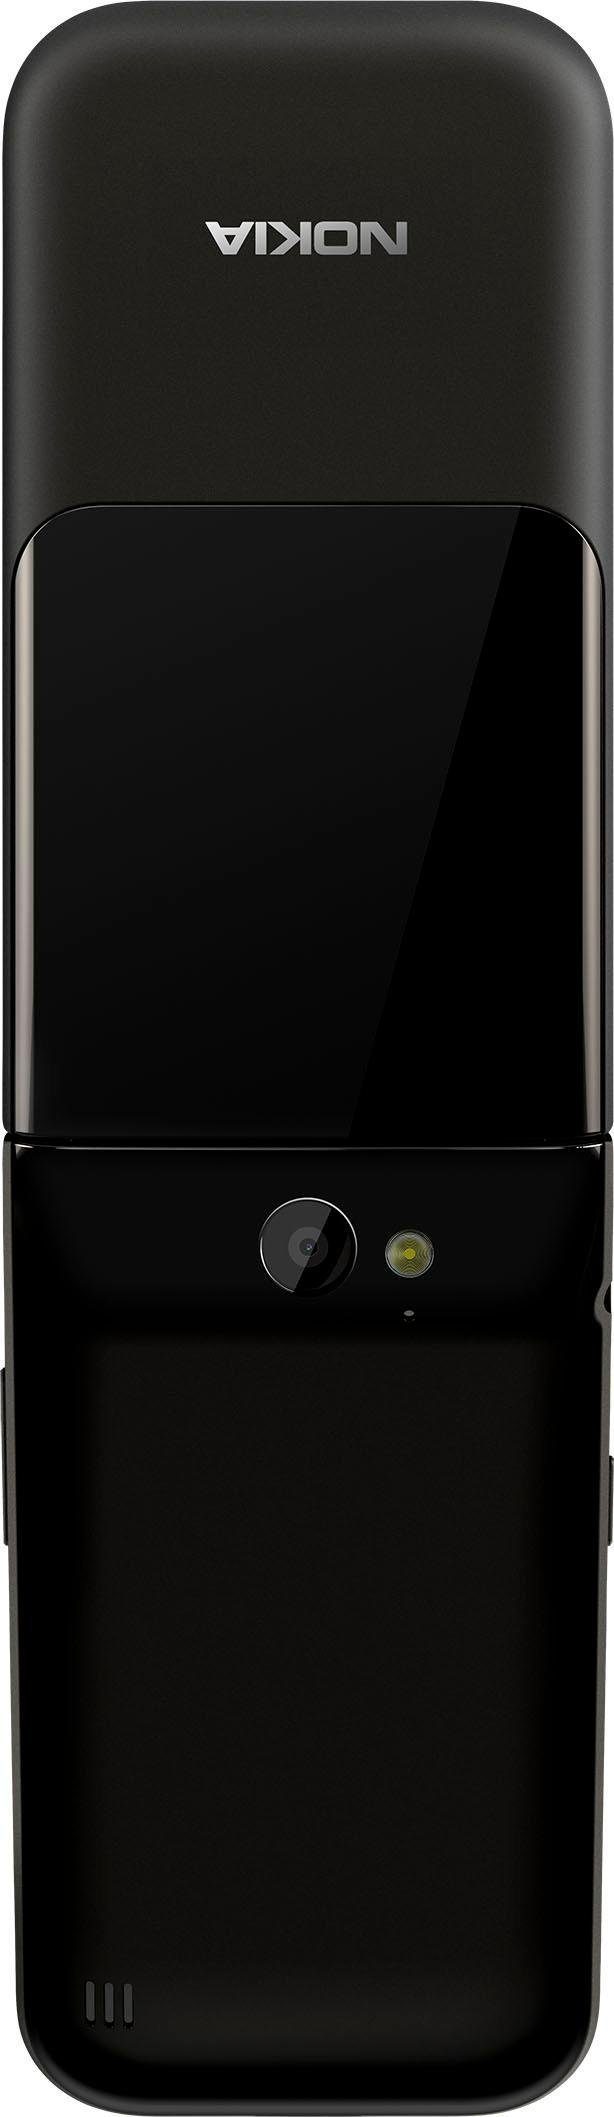 Nokia GB Speicherplatz, 4 Zoll, Klapphandy MP cm/2,8 Meerschwarz (7,1 Kamera) 2720 2